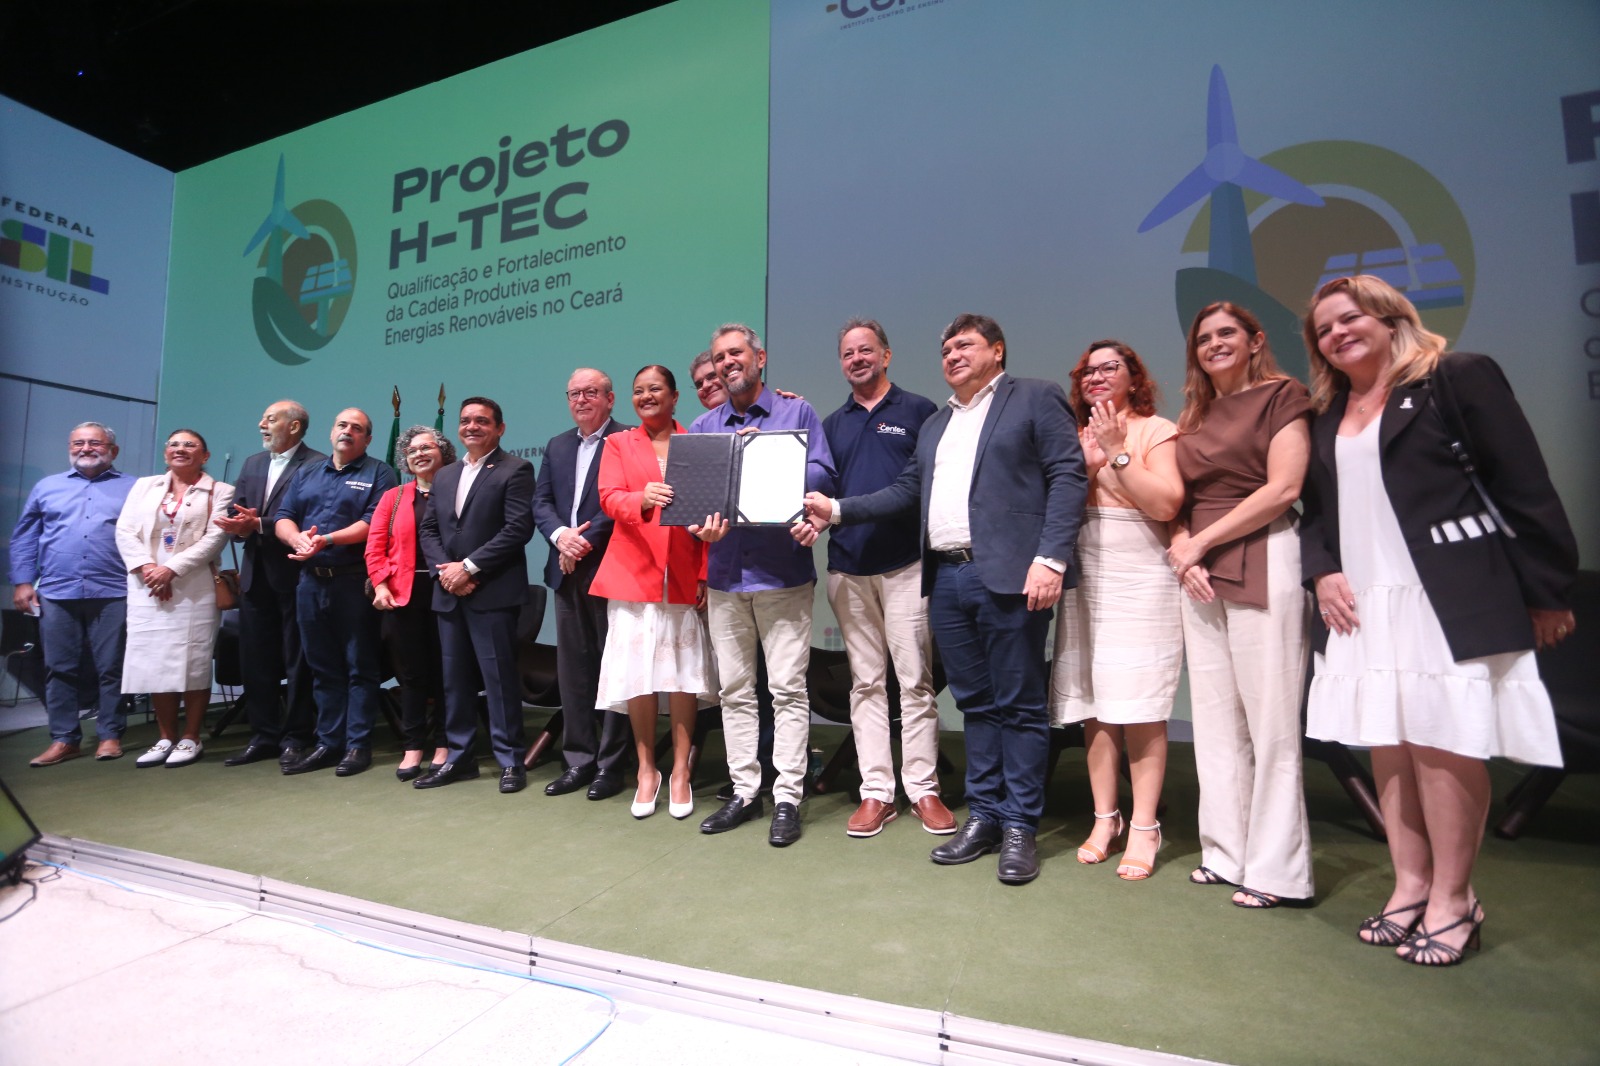 Projeto H-Tec vai formar e qualificar profissionais na área de energias renováveis